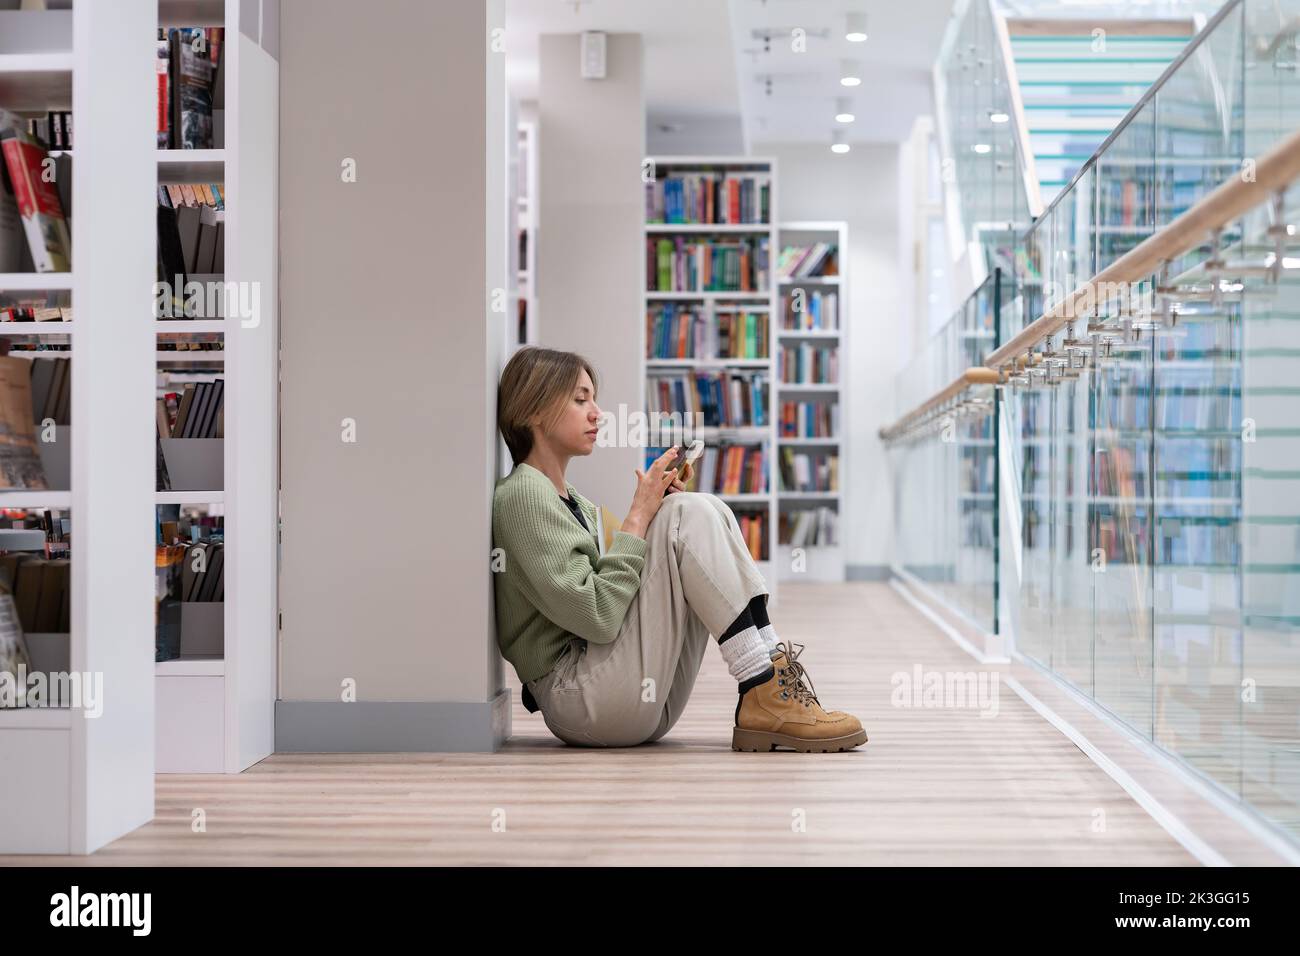 Studentin mittleren Alters, die auf dem Boden sitzt und in der Universitätsbibliothek ein Buch liest. Zweiter Grad. Stockfoto